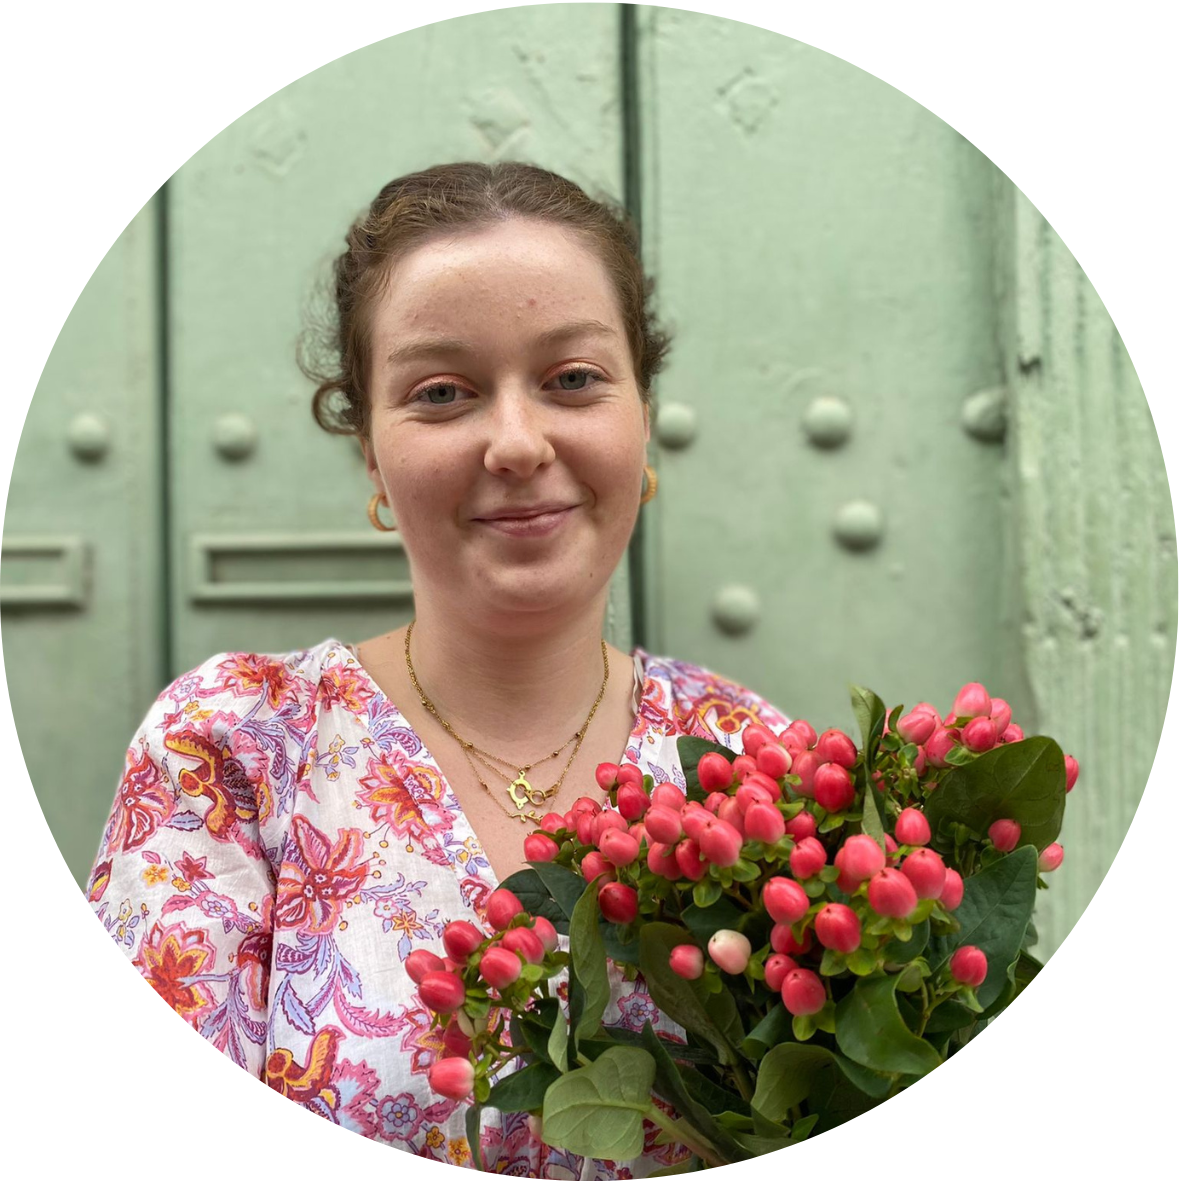 Portrait de Laurine, nouvelle apprentie fleuriste au Mans